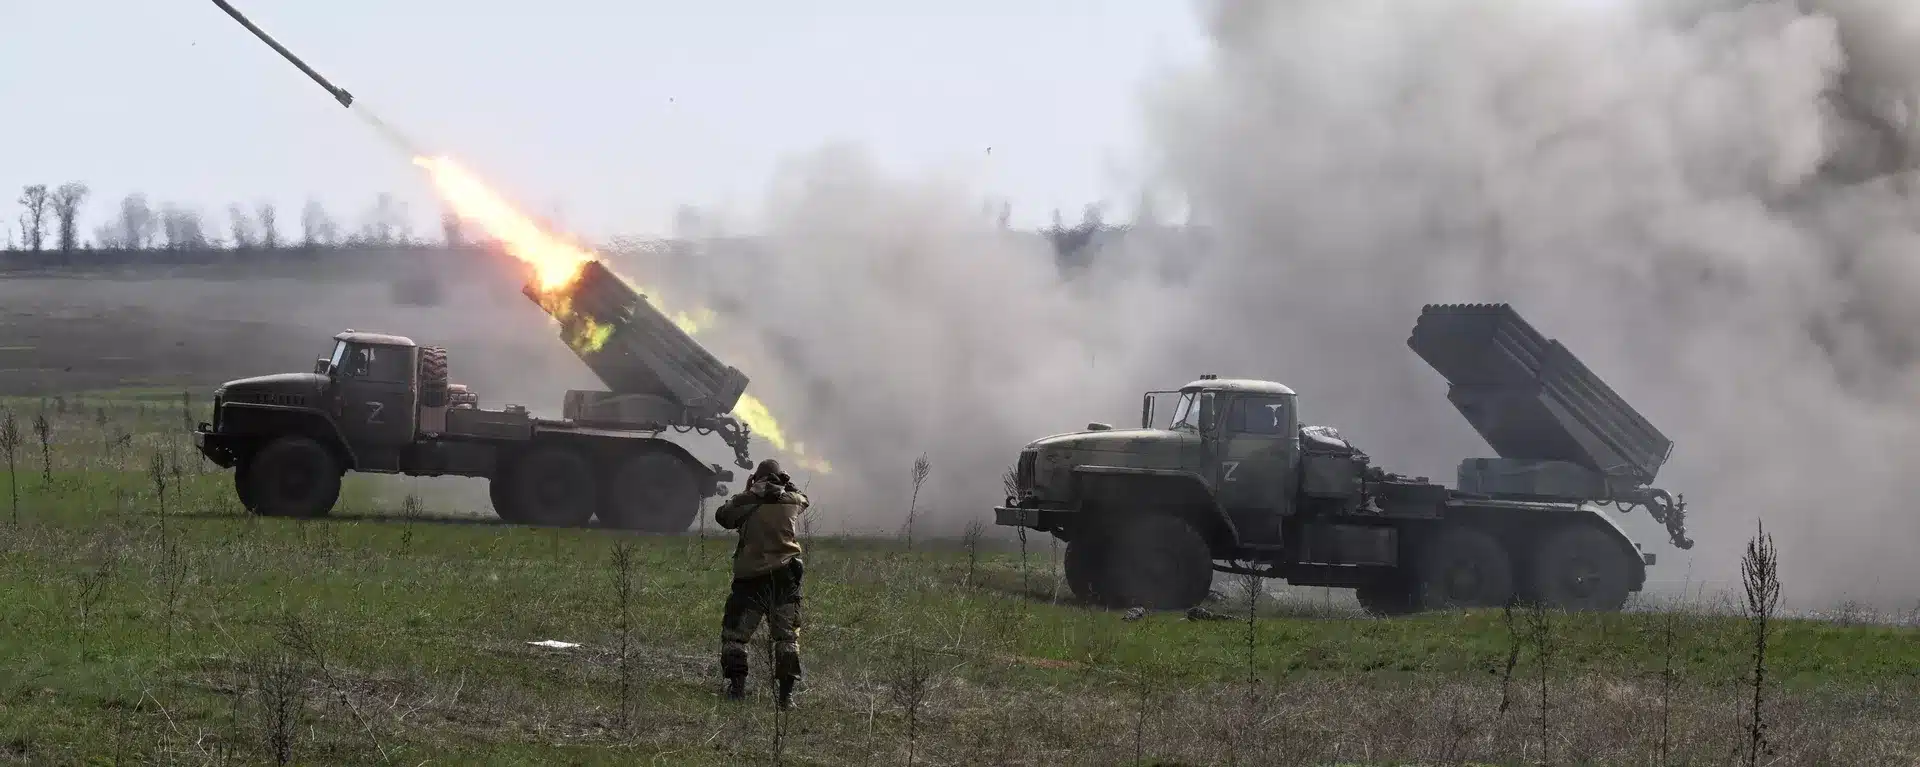 فيديو مرعب لأمطار اللهب الروسية الحارقة في أوكرانيا